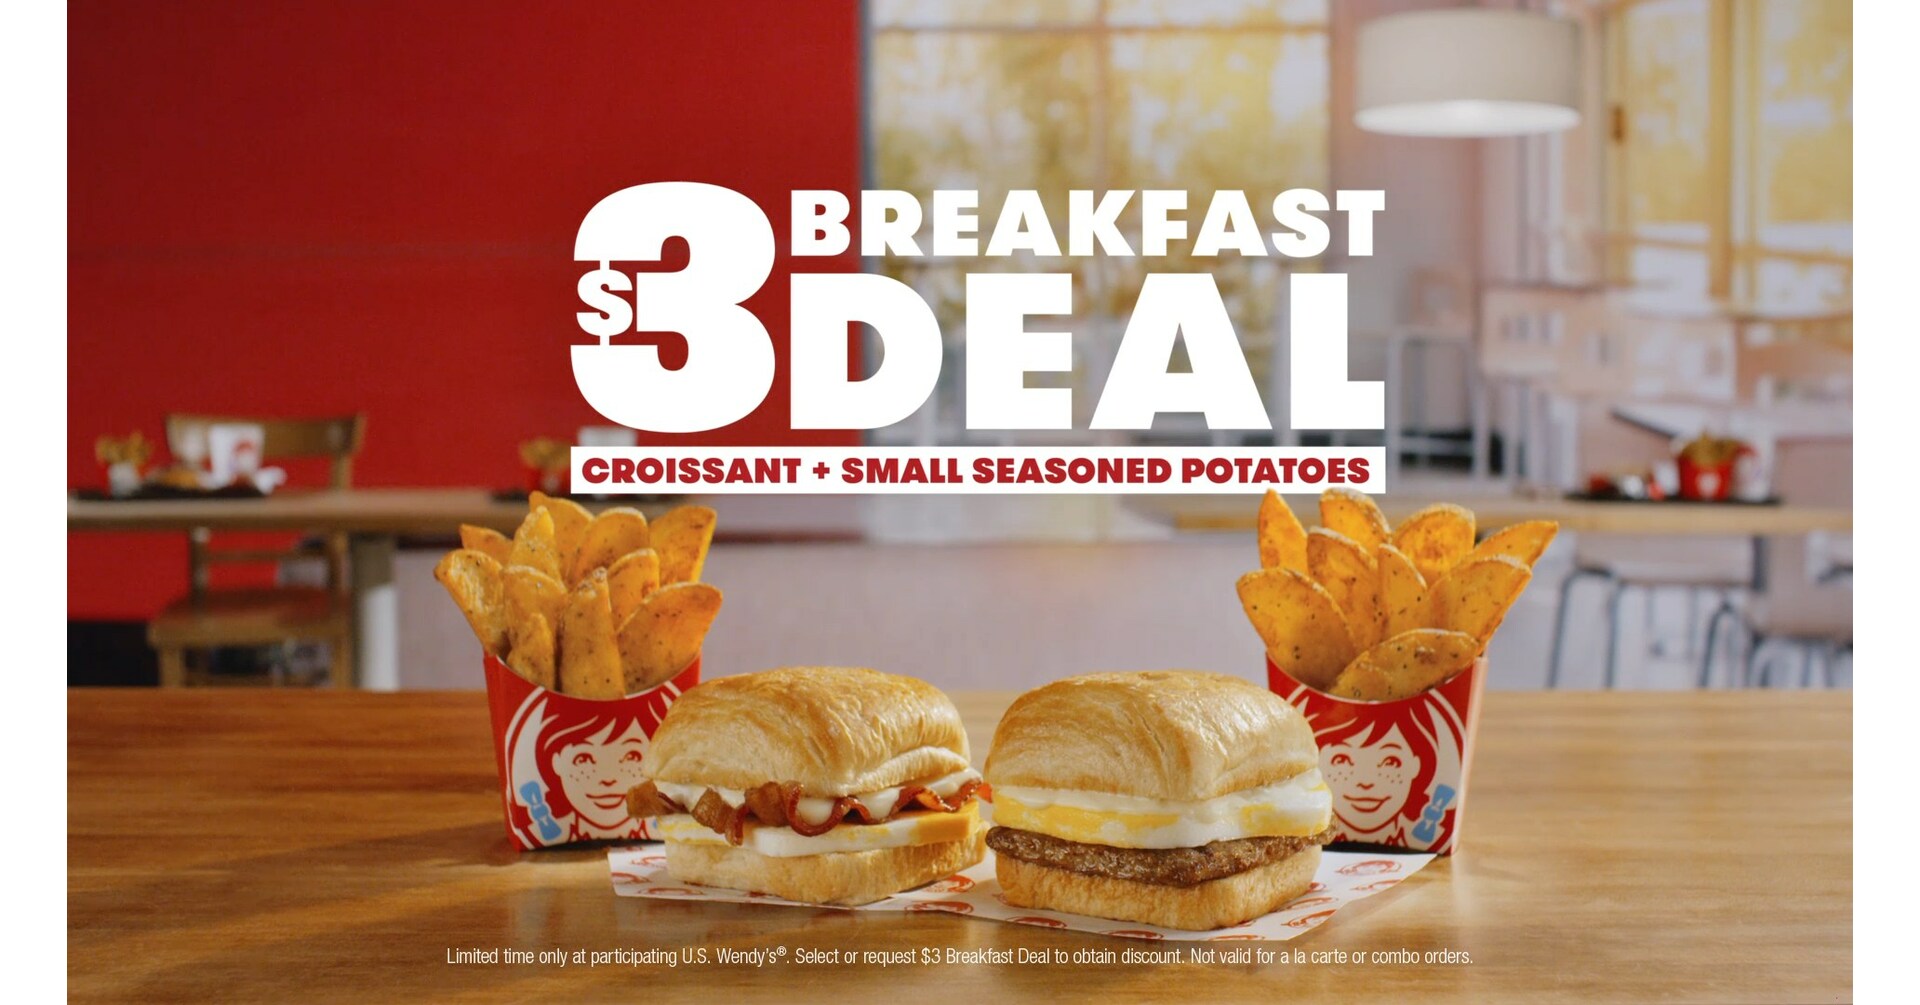 Discount breakfast deals